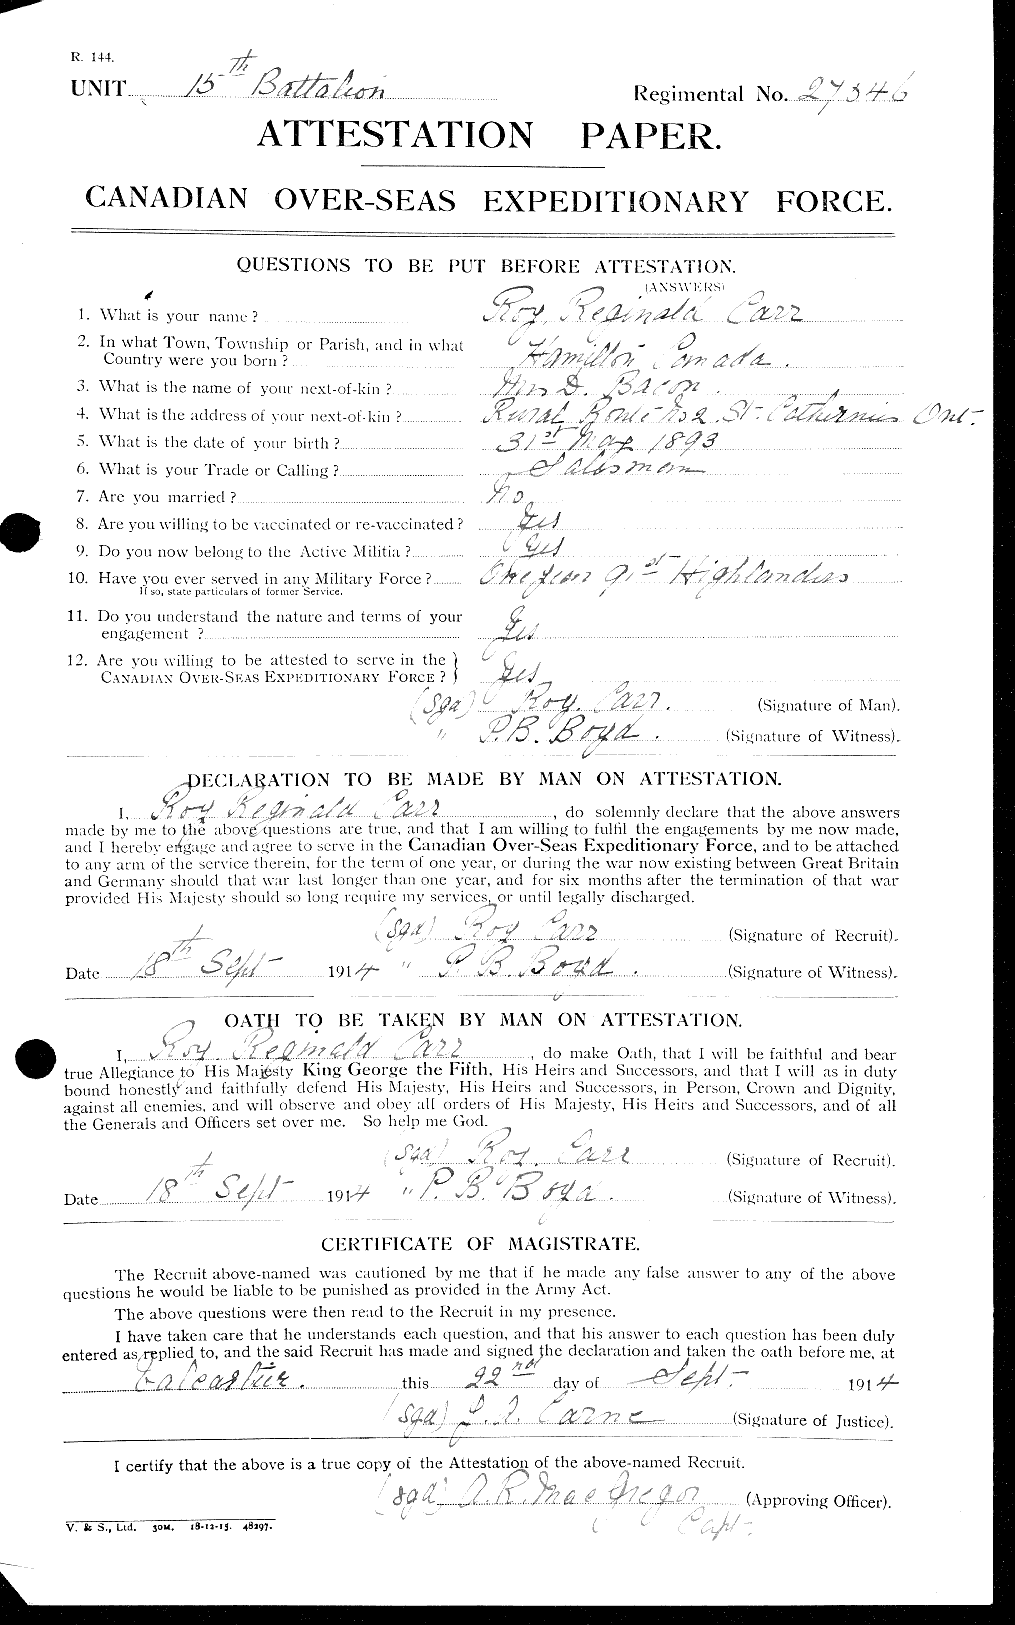 Dossiers du Personnel de la Première Guerre mondiale - CEC 010394a